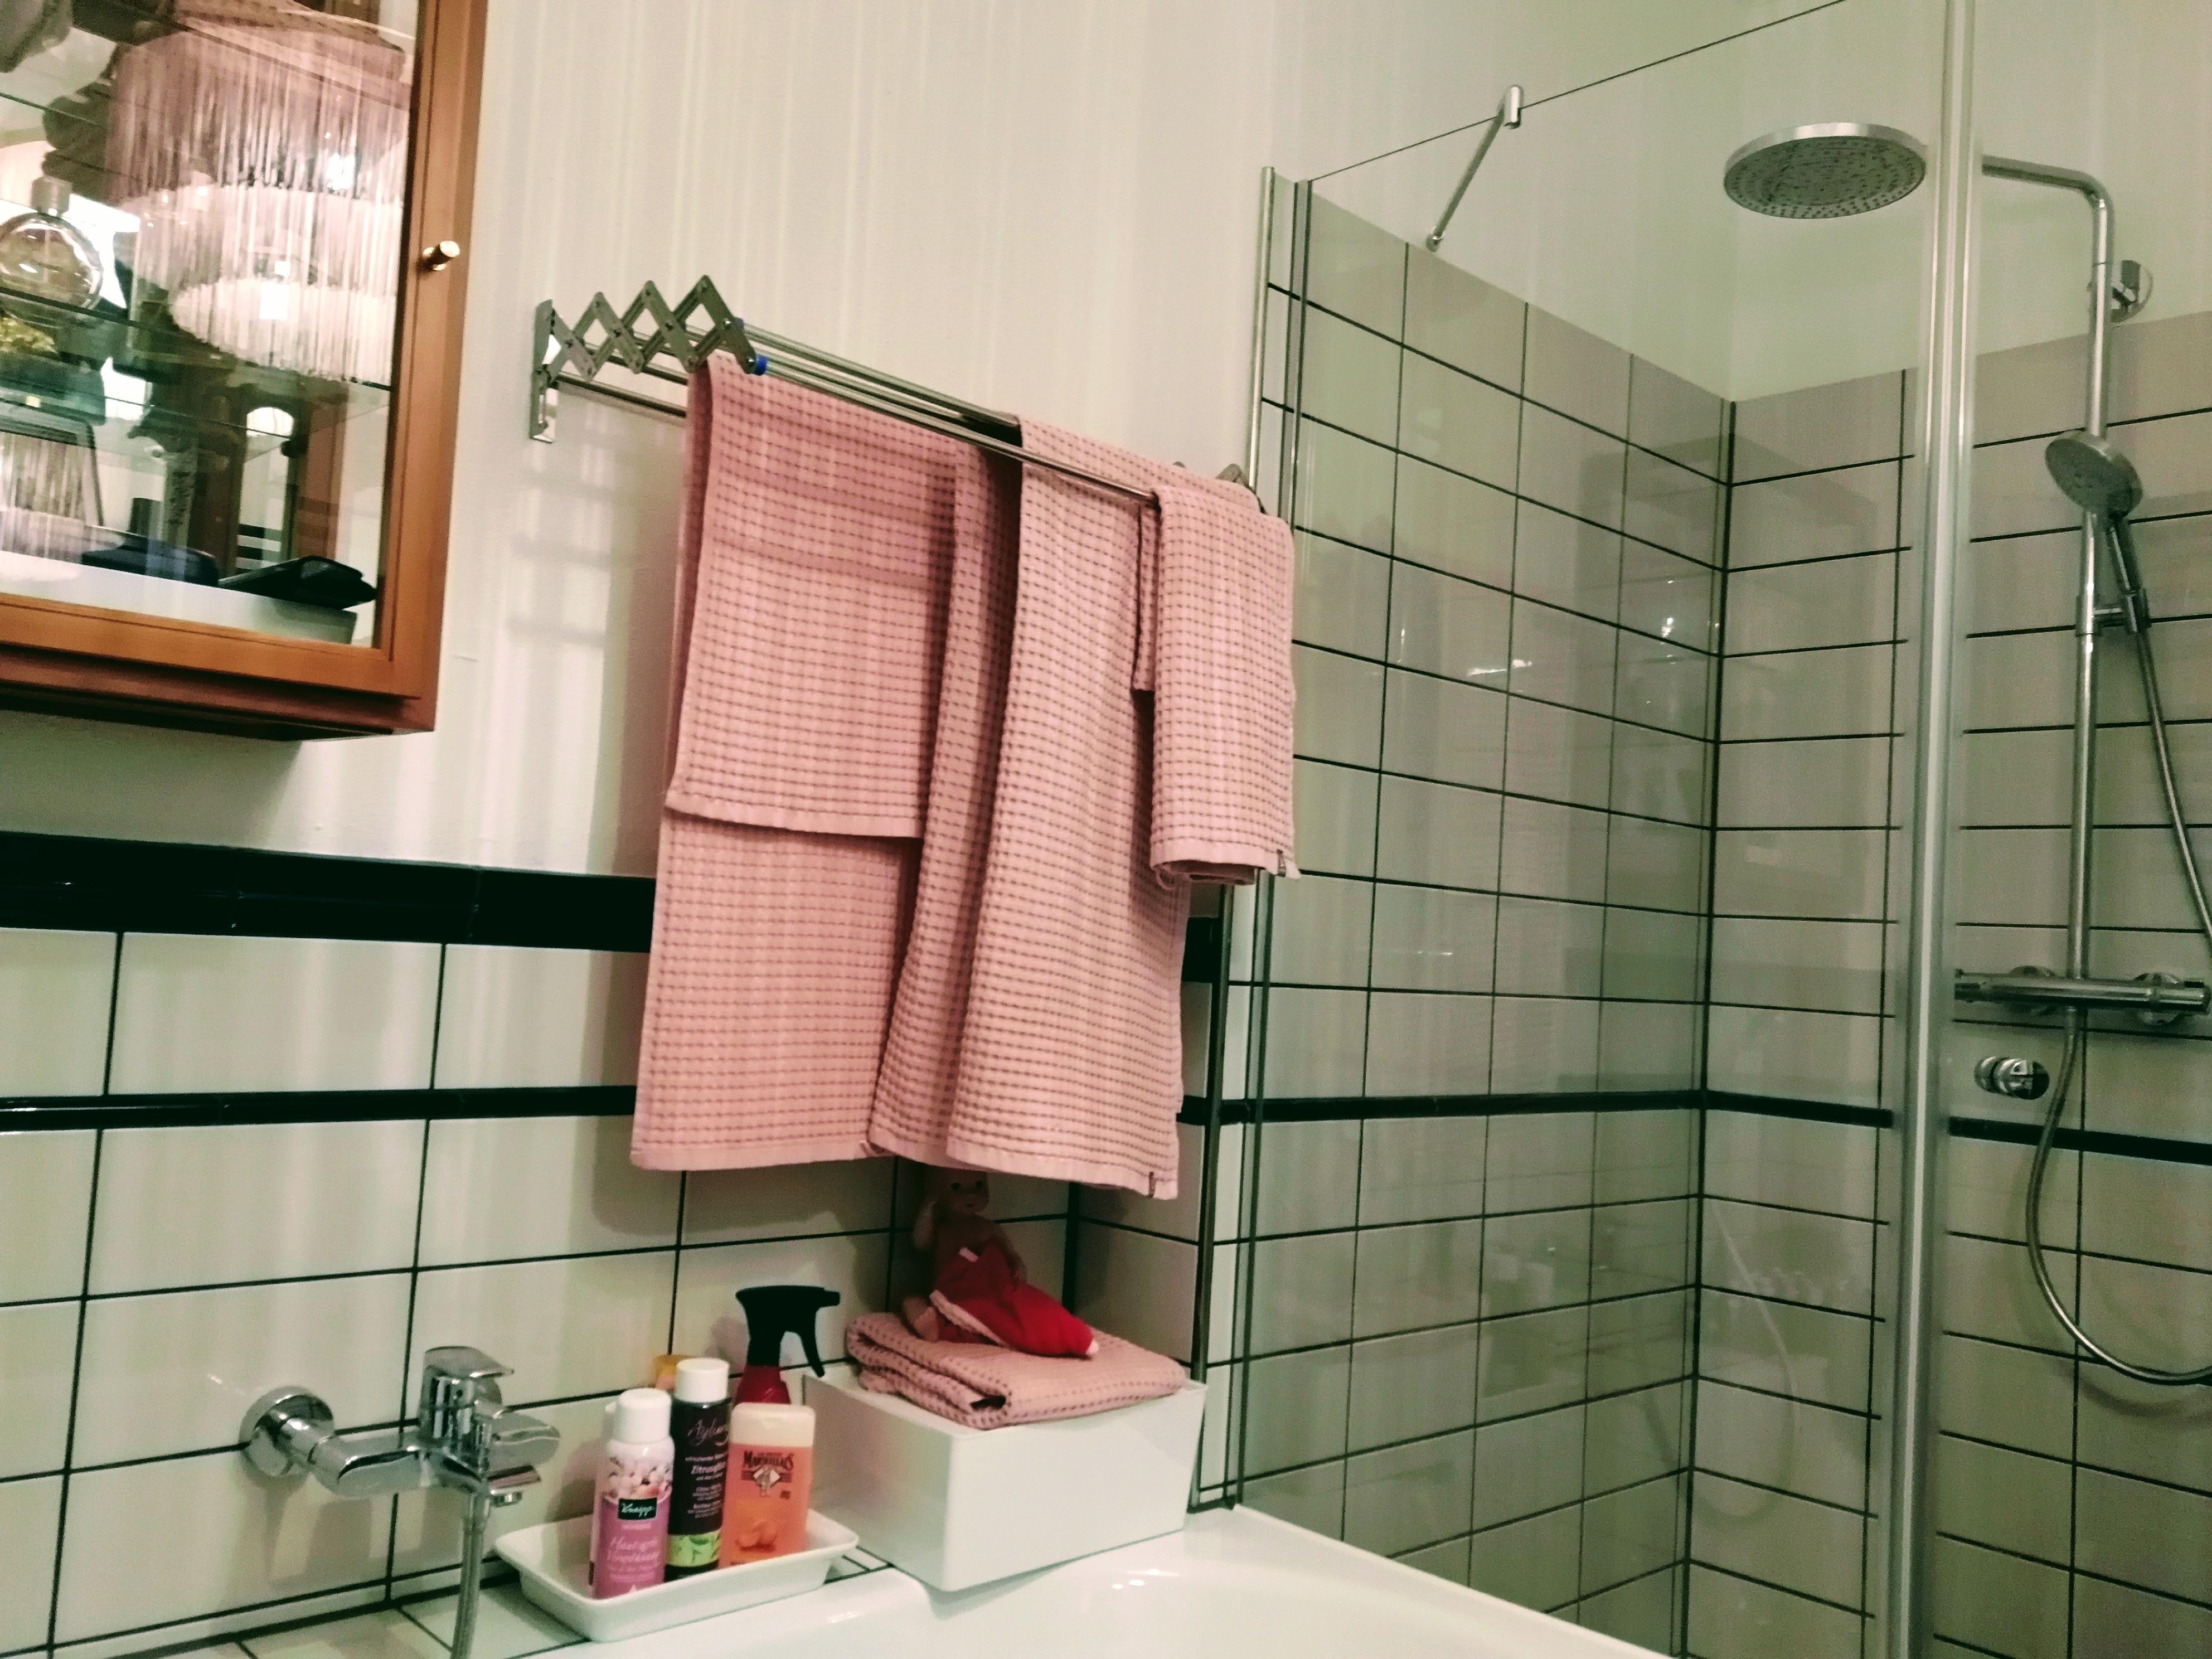 Modernes #badezimmer im Retrostyle mit italienischen #badfliesen... #livingchallenge #retro #vintage #badezimmerdeko 